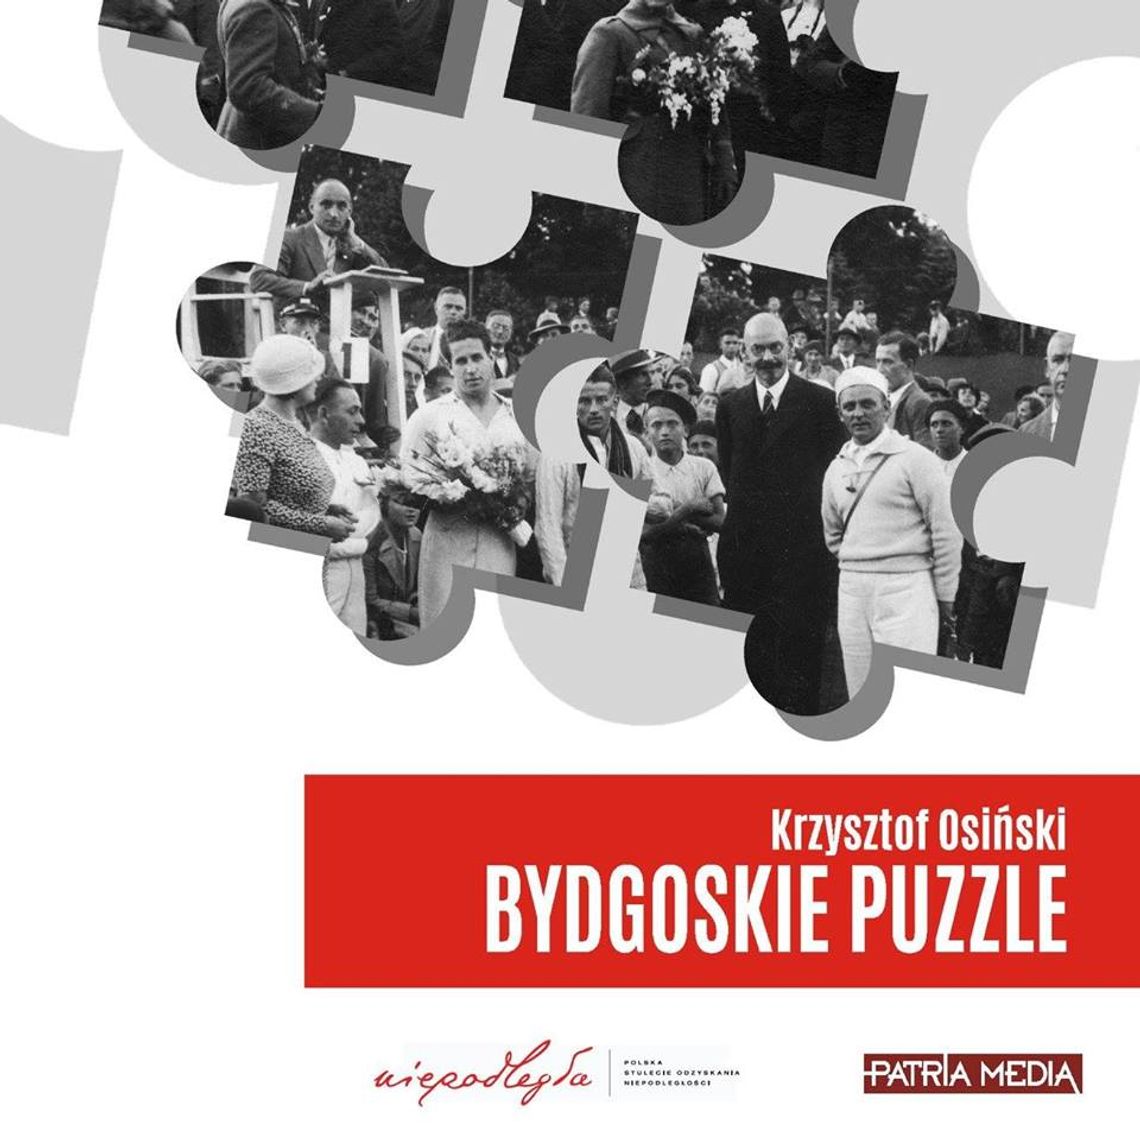 Przed nami premiera książki "Bydgoskie puzzle" Krzysztofa Osińskiego